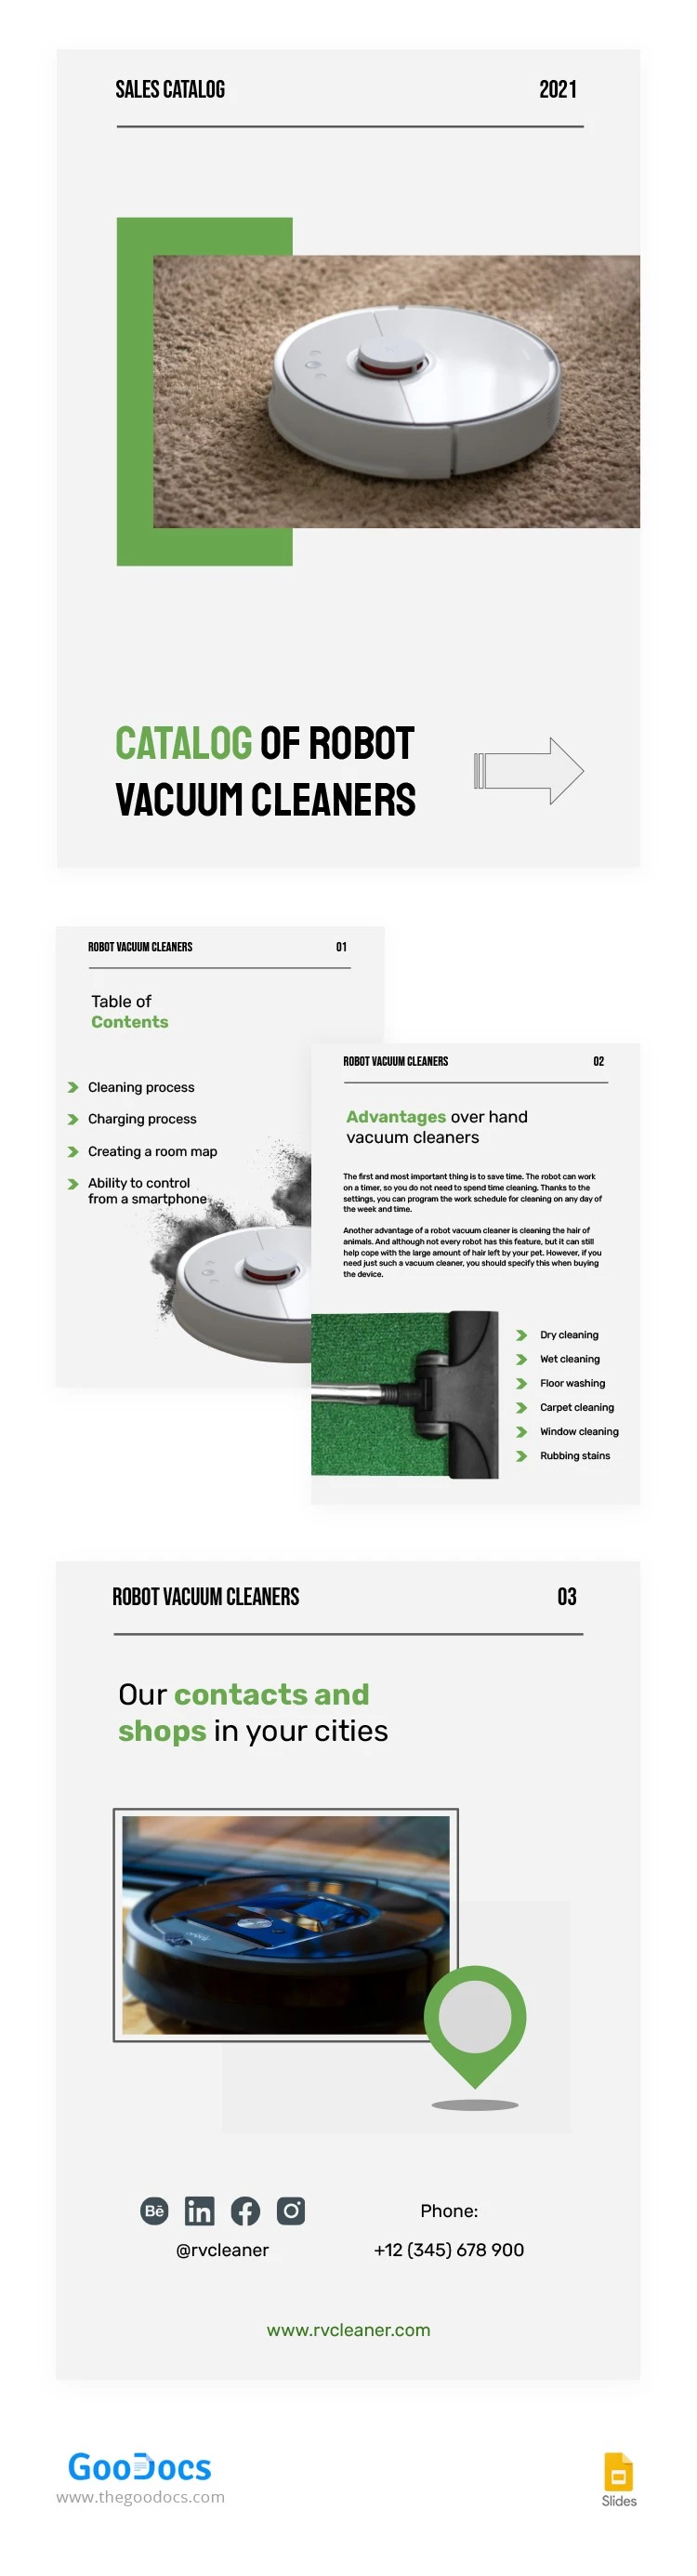 Catálogo de ventas de aspiradoras robóticas - free Google Docs Template - 10062955